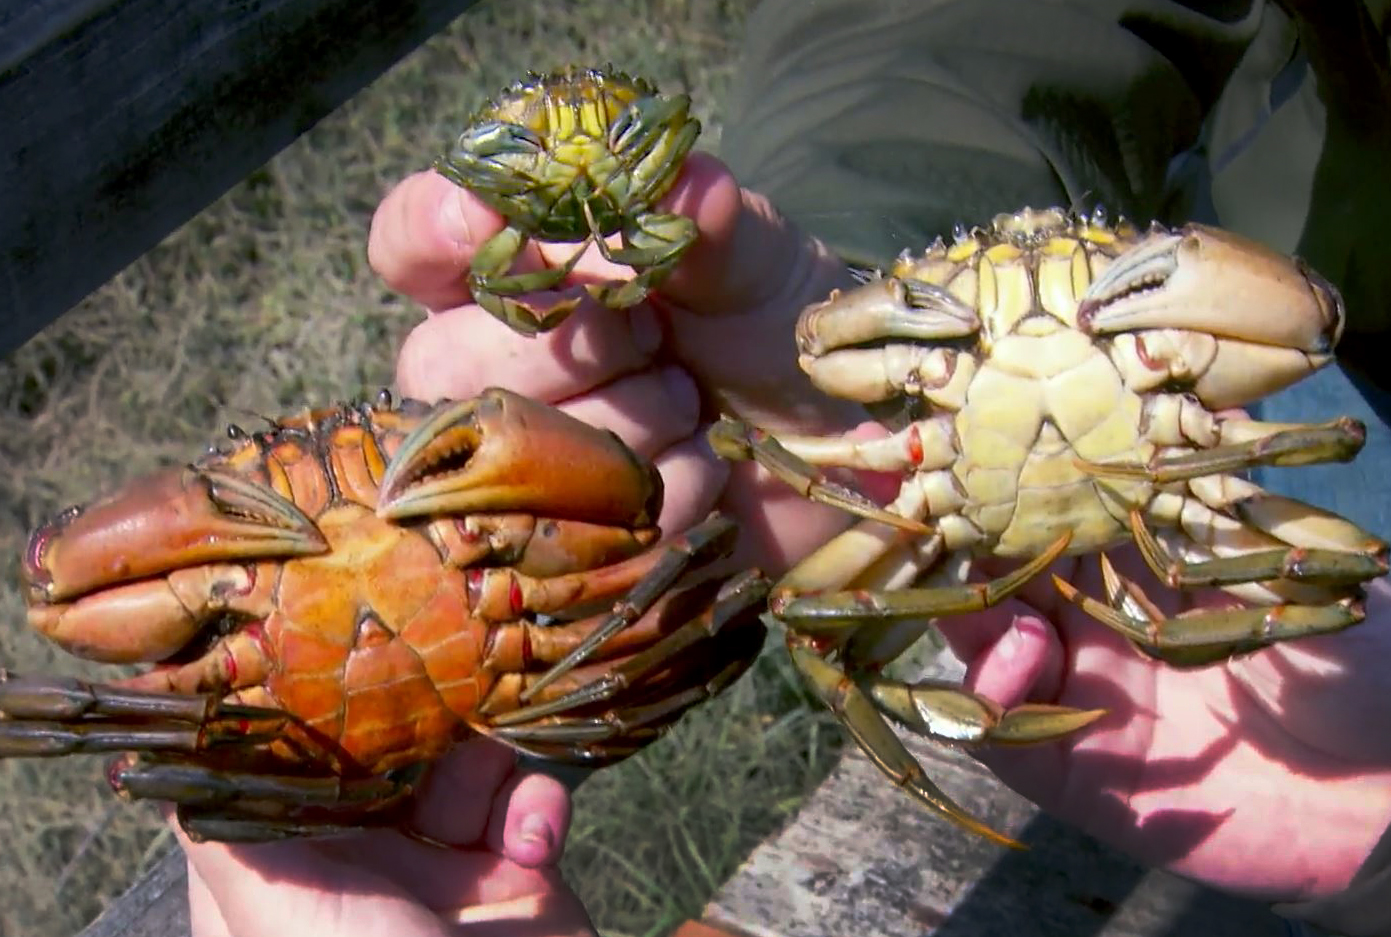 Invasive European green crabs threaten Northwest shellfish industries - OPB